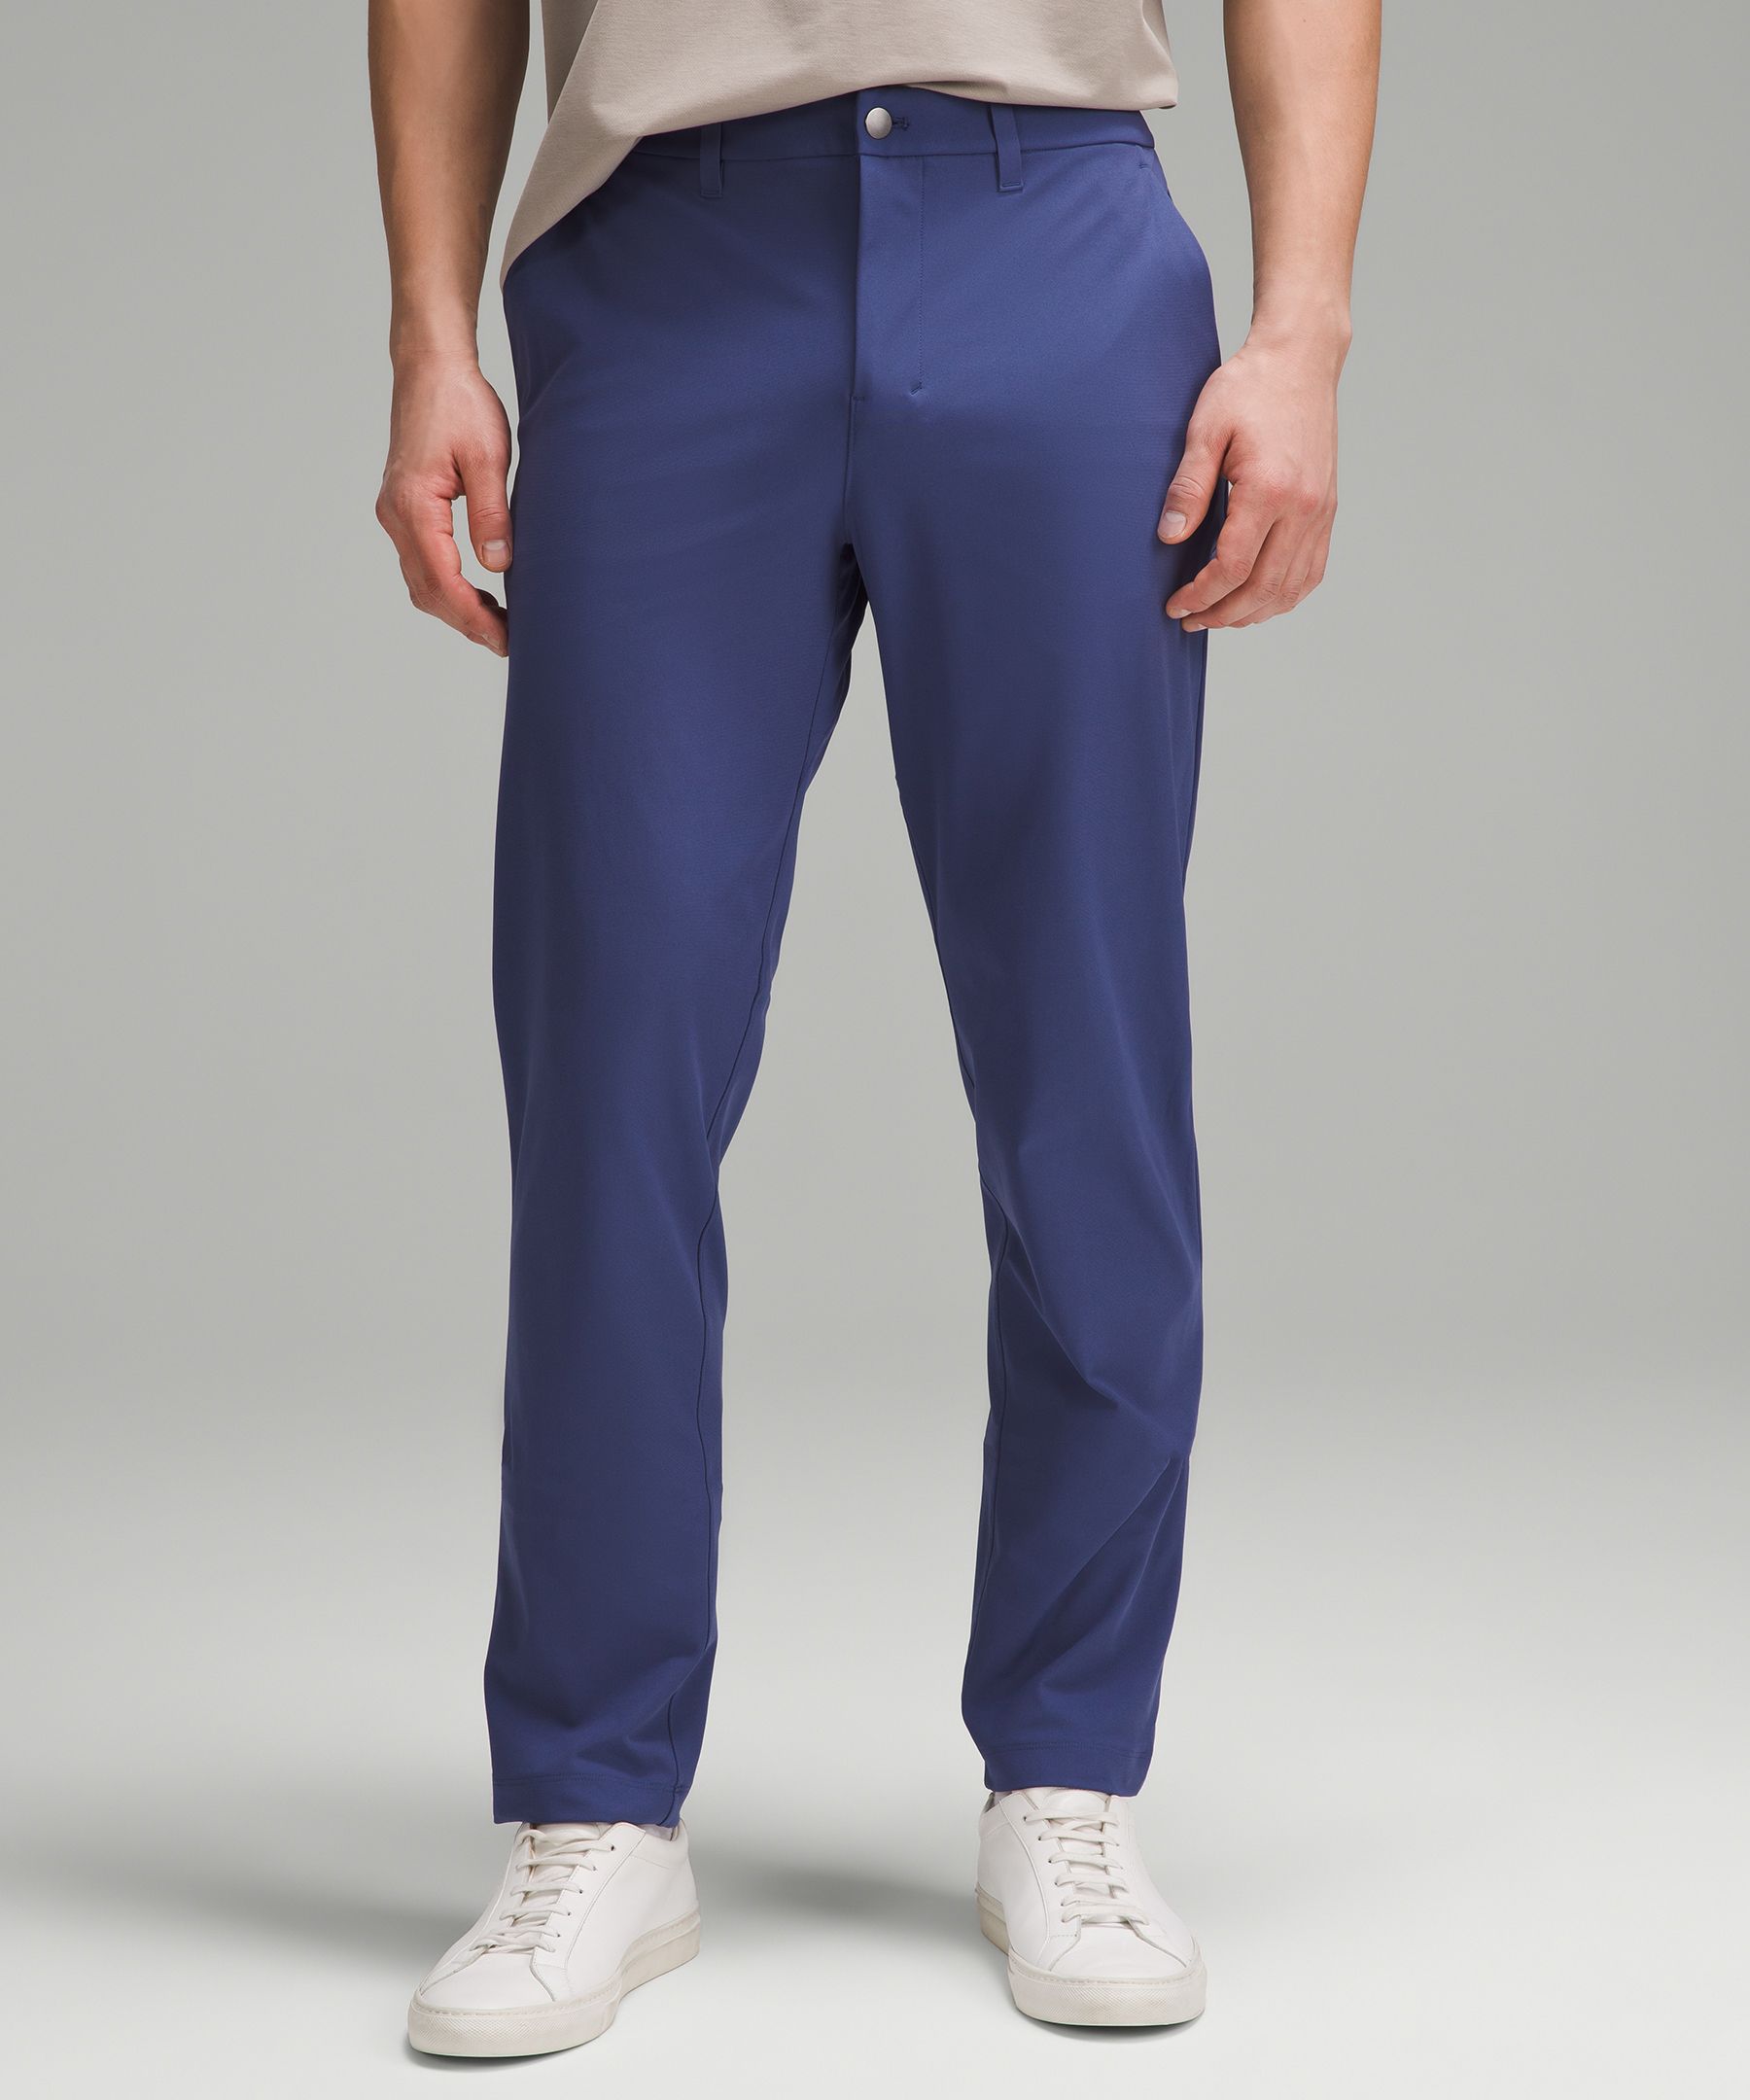 ABC Classic-Fit Trouser 37"L *Warpstreme | Men's Trousers